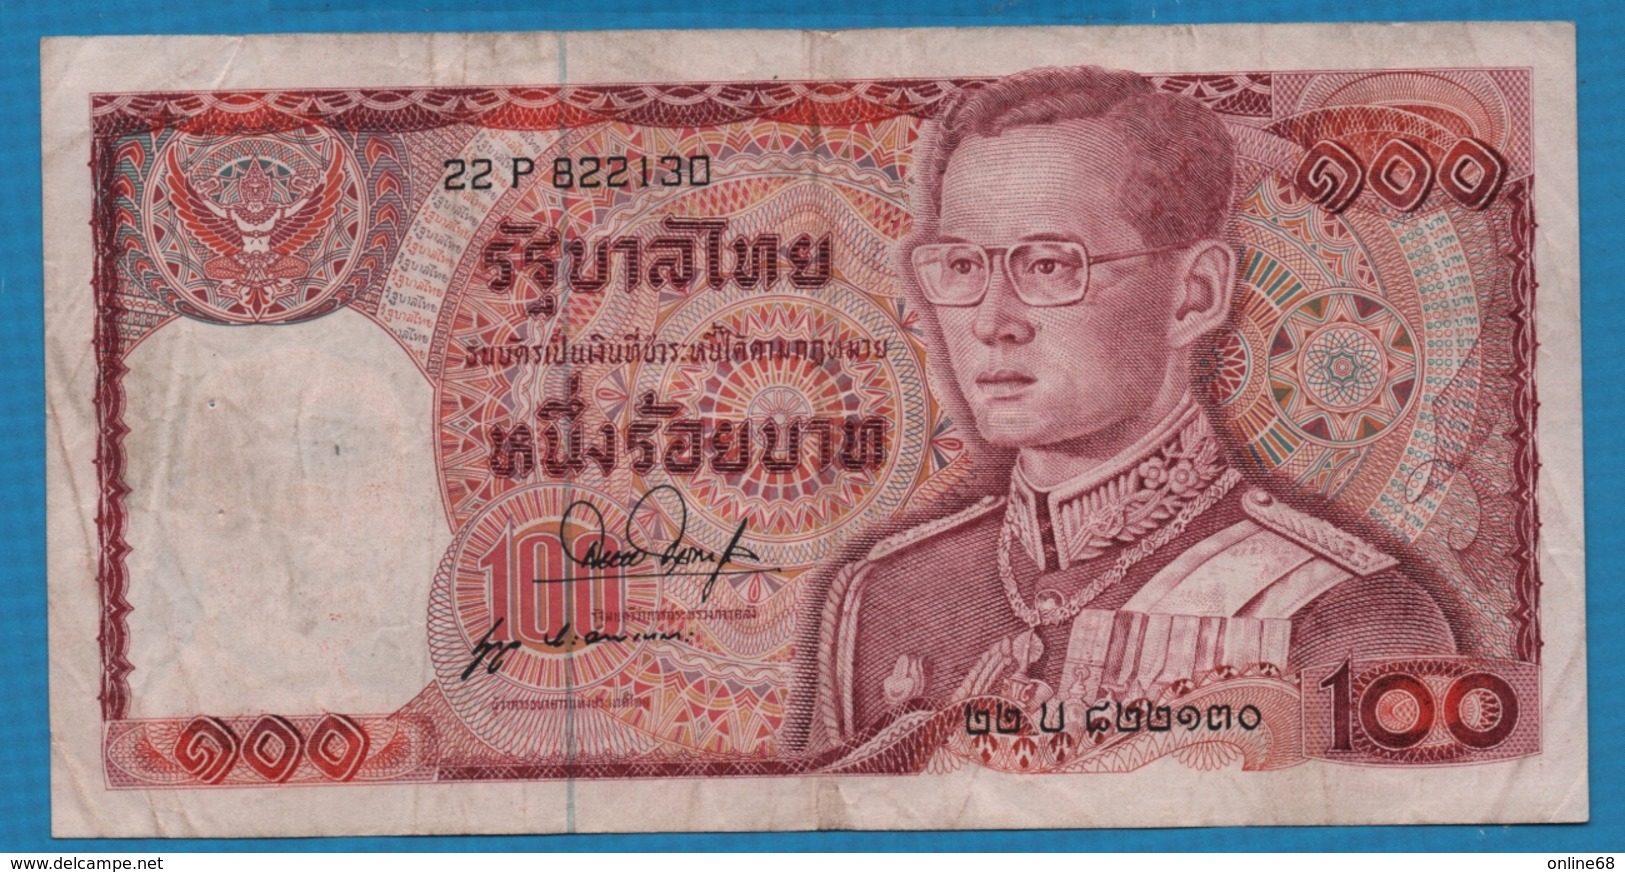 THAILAND  	100 Baht   Rama IX 	ND (1978)	Serie 22P 822130  KM# 89 - Thailand